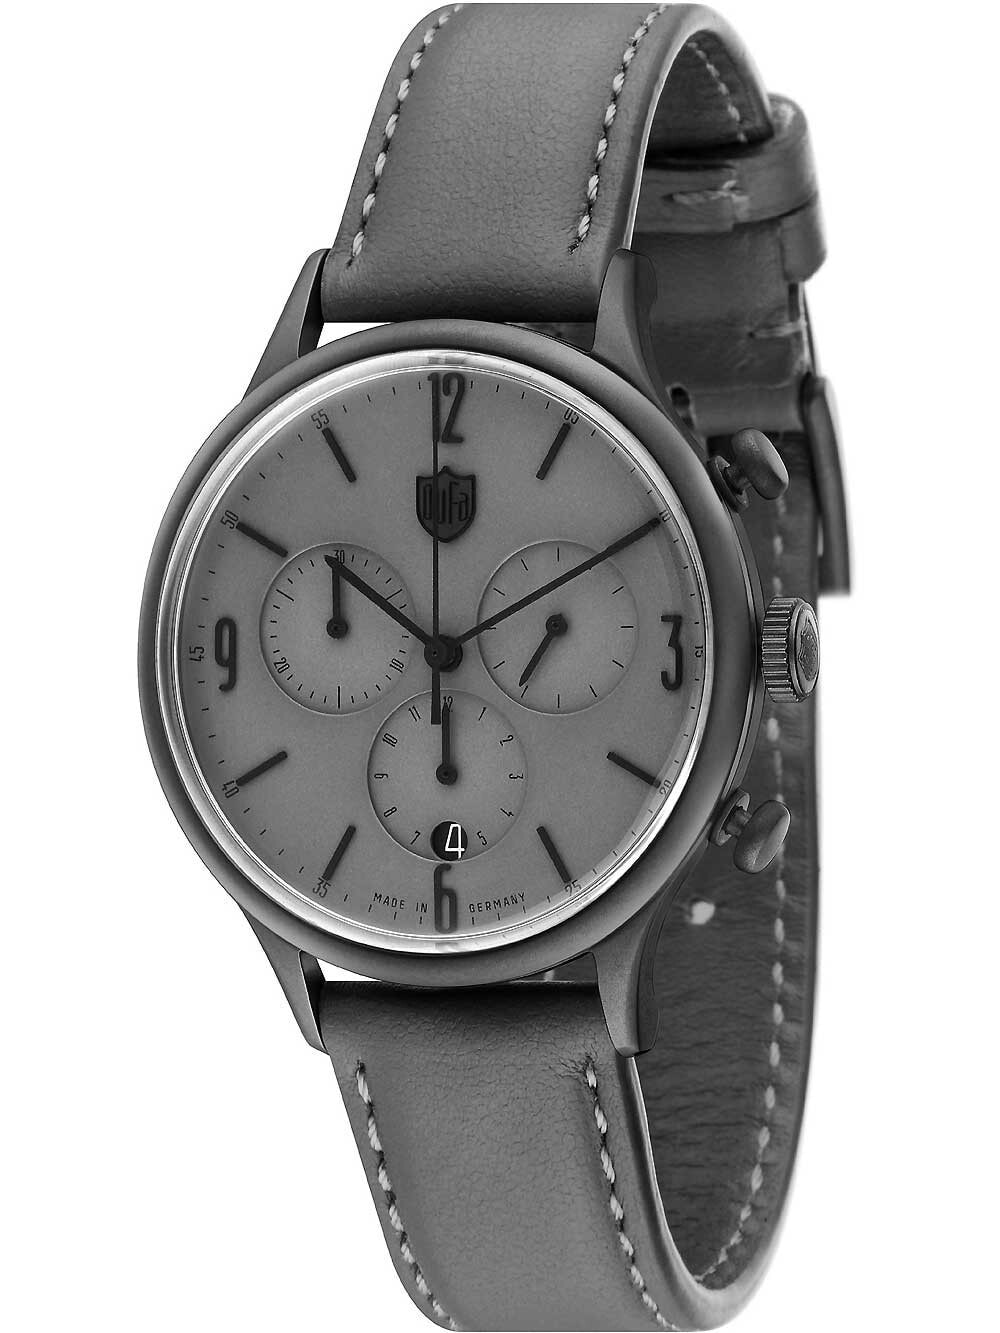 Мужские наручные часы с серым кожаным ремешком DuFa DF-9002-0C chrono 38 mm 3ATM